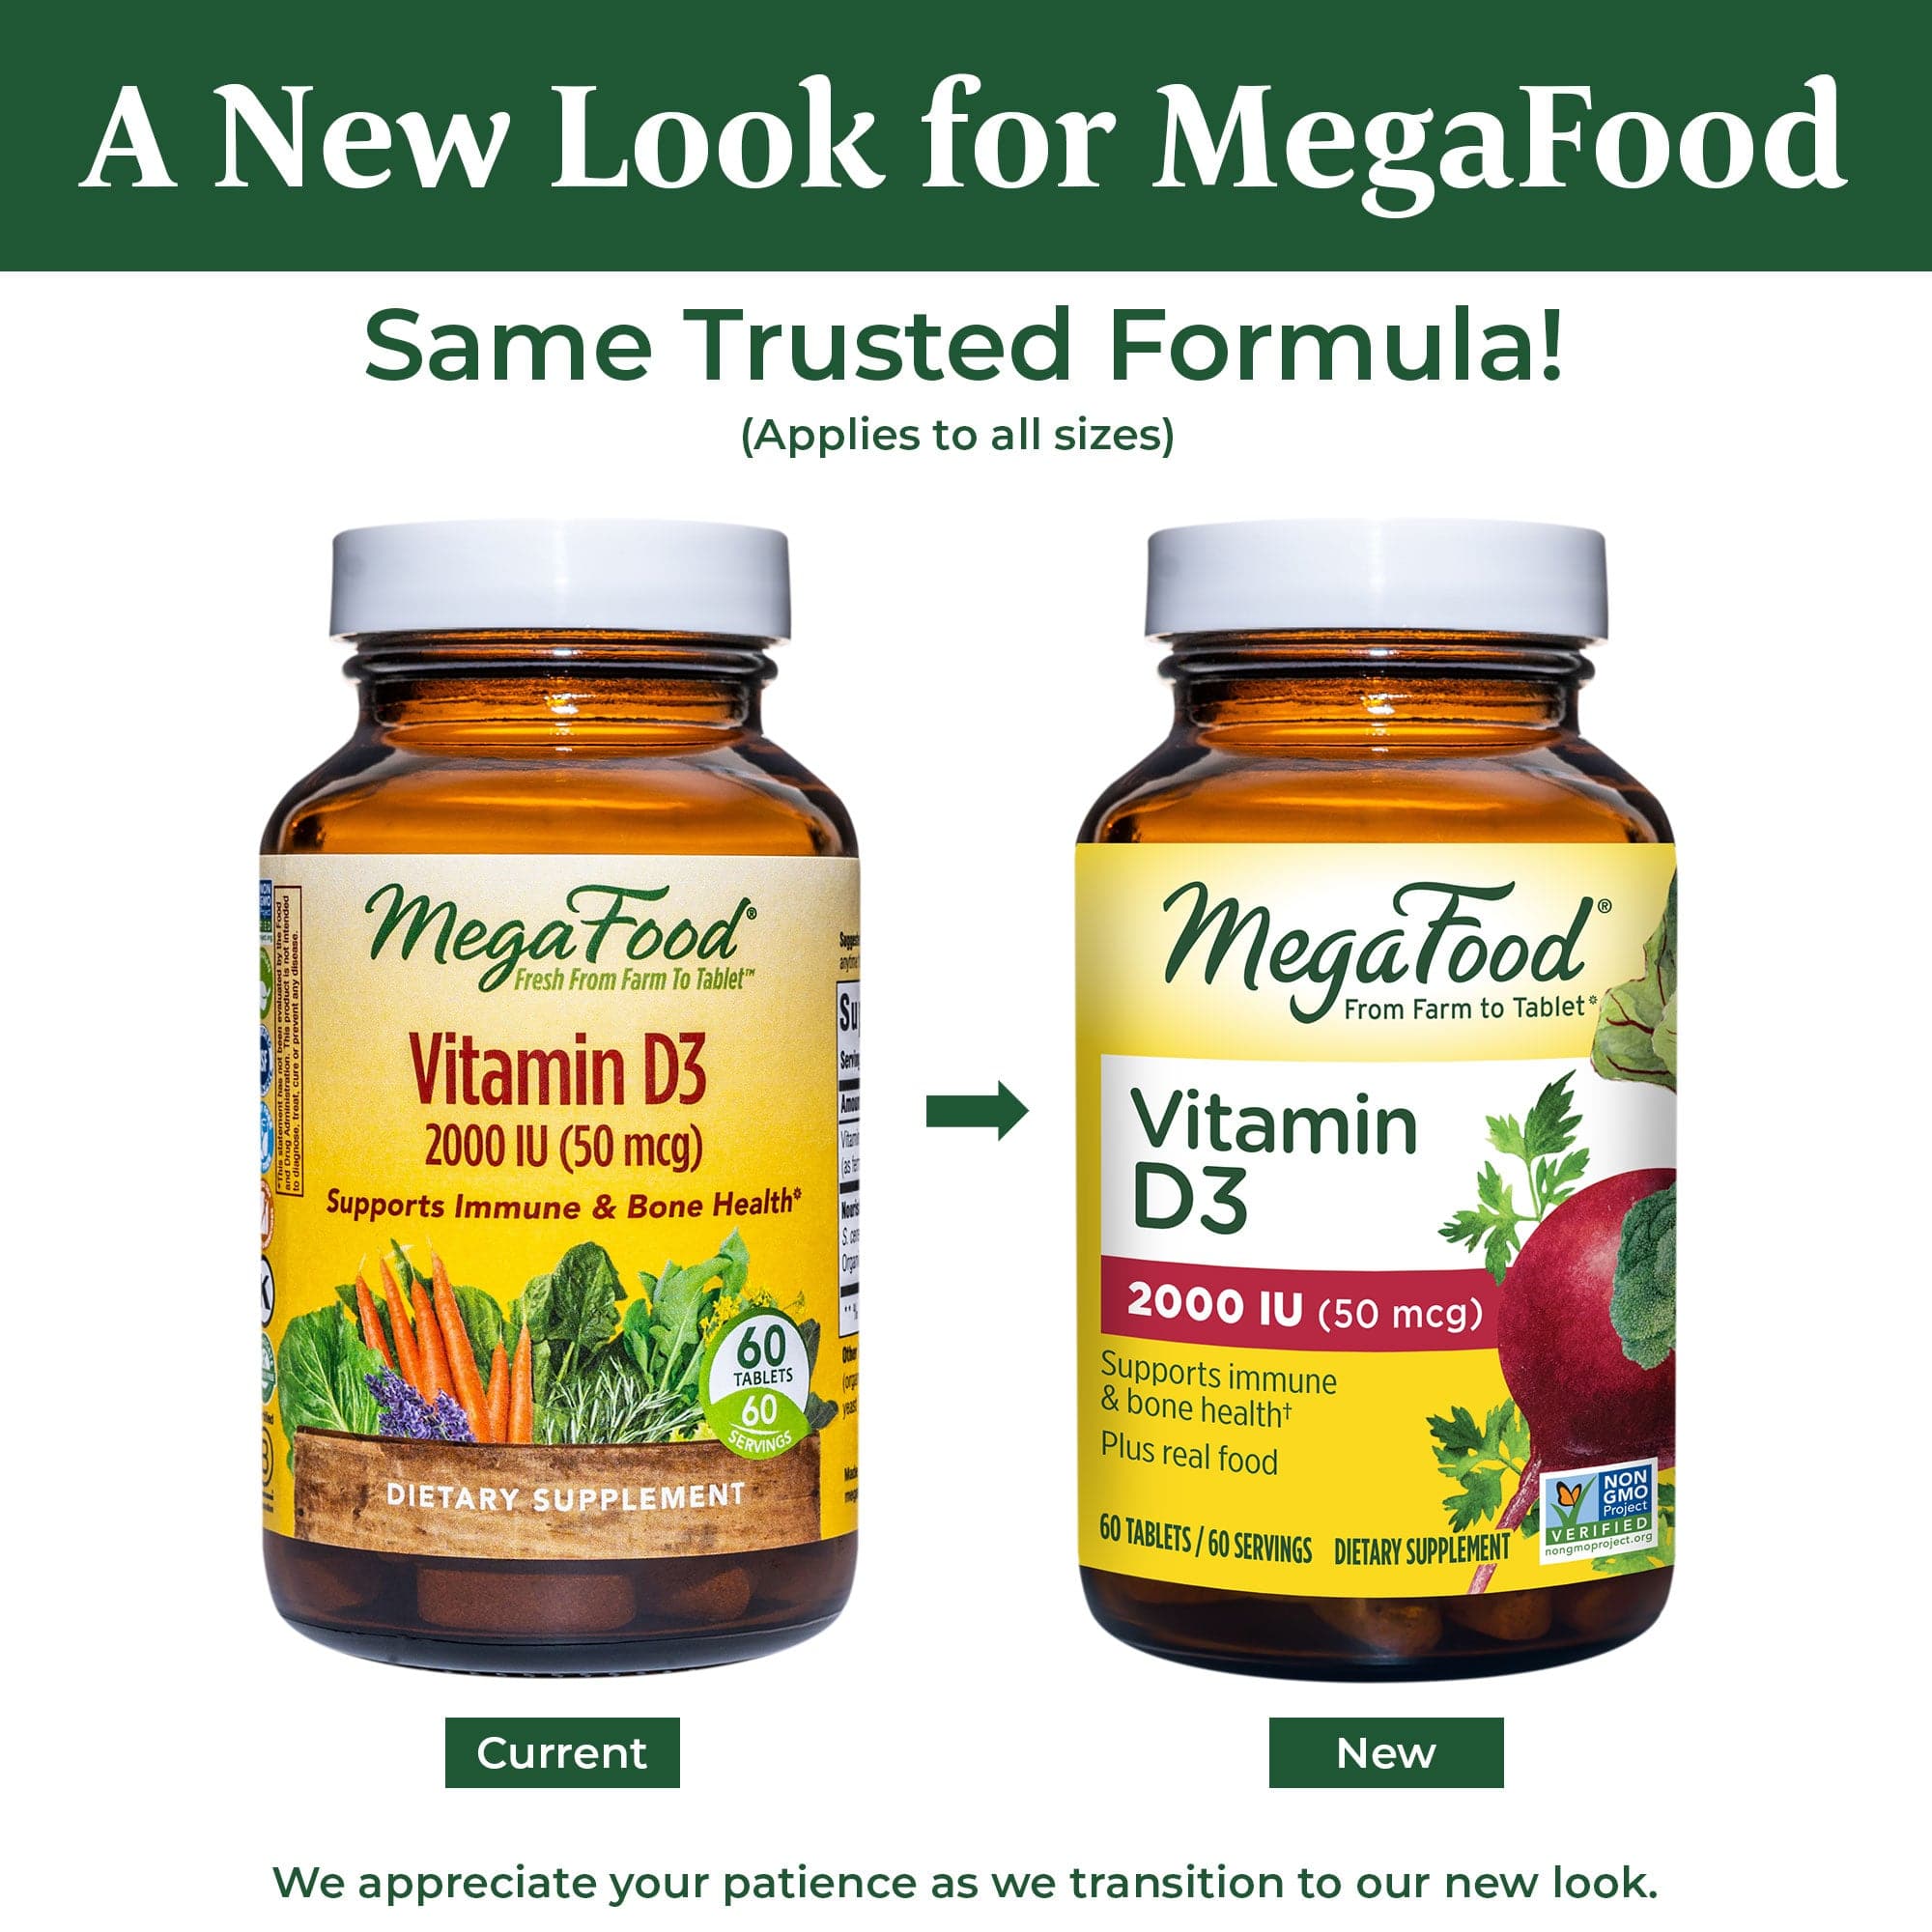 MegaFood Vitamin D3 2000 IU (50 mcg)